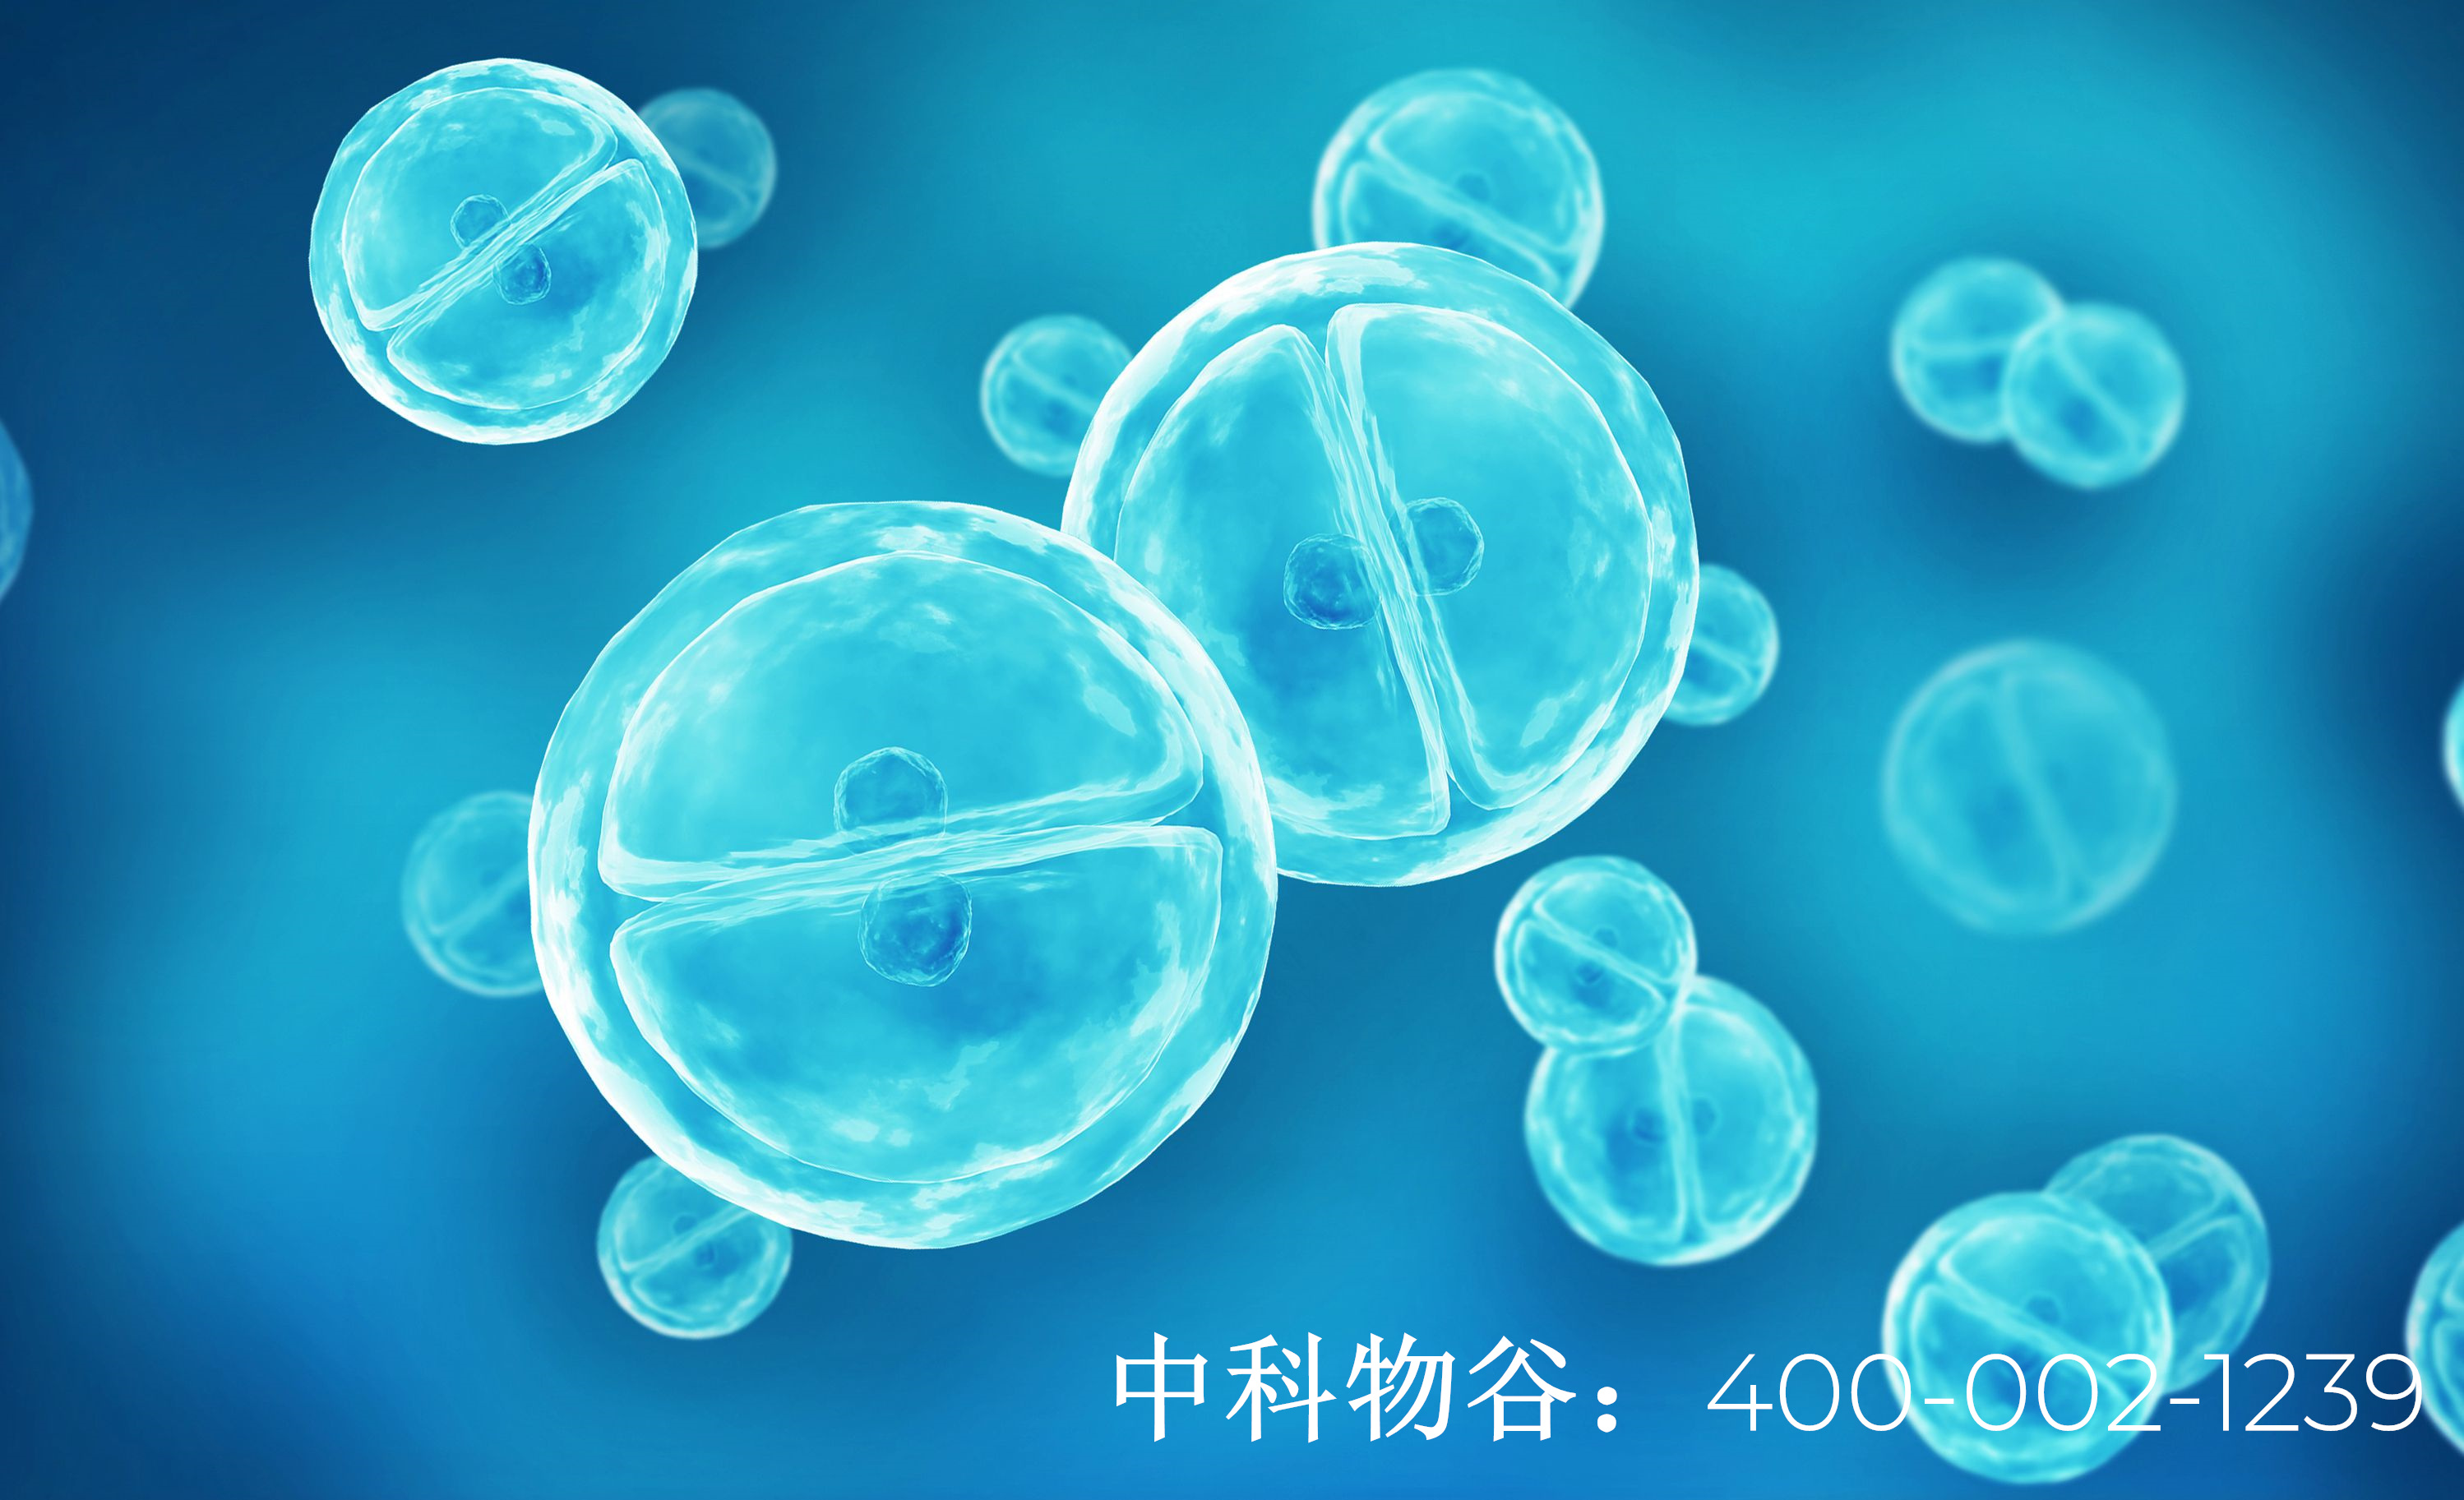 北京最出名的脑肿瘤医院是哪家-中科物谷干细胞